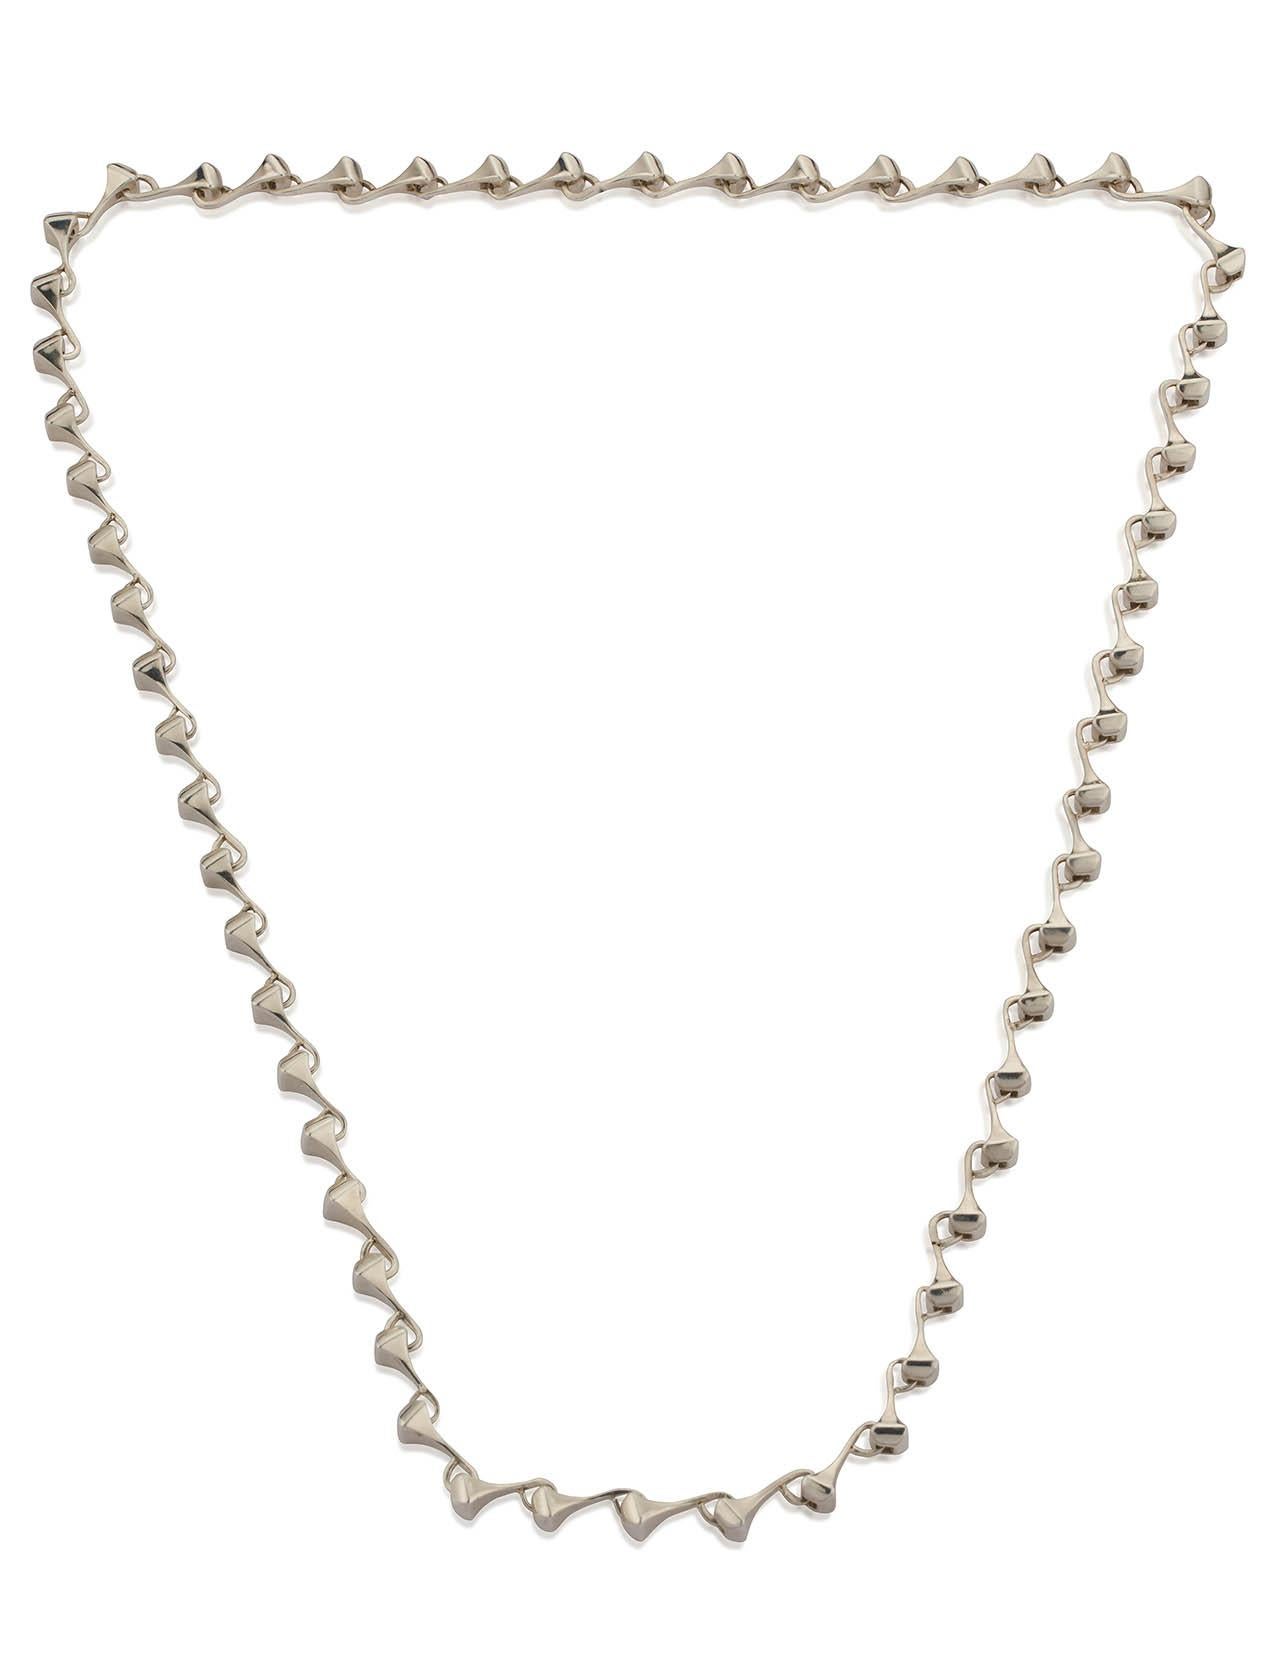 Lange Halskette aus poliertem Sterlingsilber in geschlechtsneutralem Stil
Das Design hat eine Rock'n'Roll-Atmosphäre und ist von der Welt des Pferdesports inspiriert, da die Glieder der Halskette eine Form haben, die an Hufeisennägel erinnert. Auch